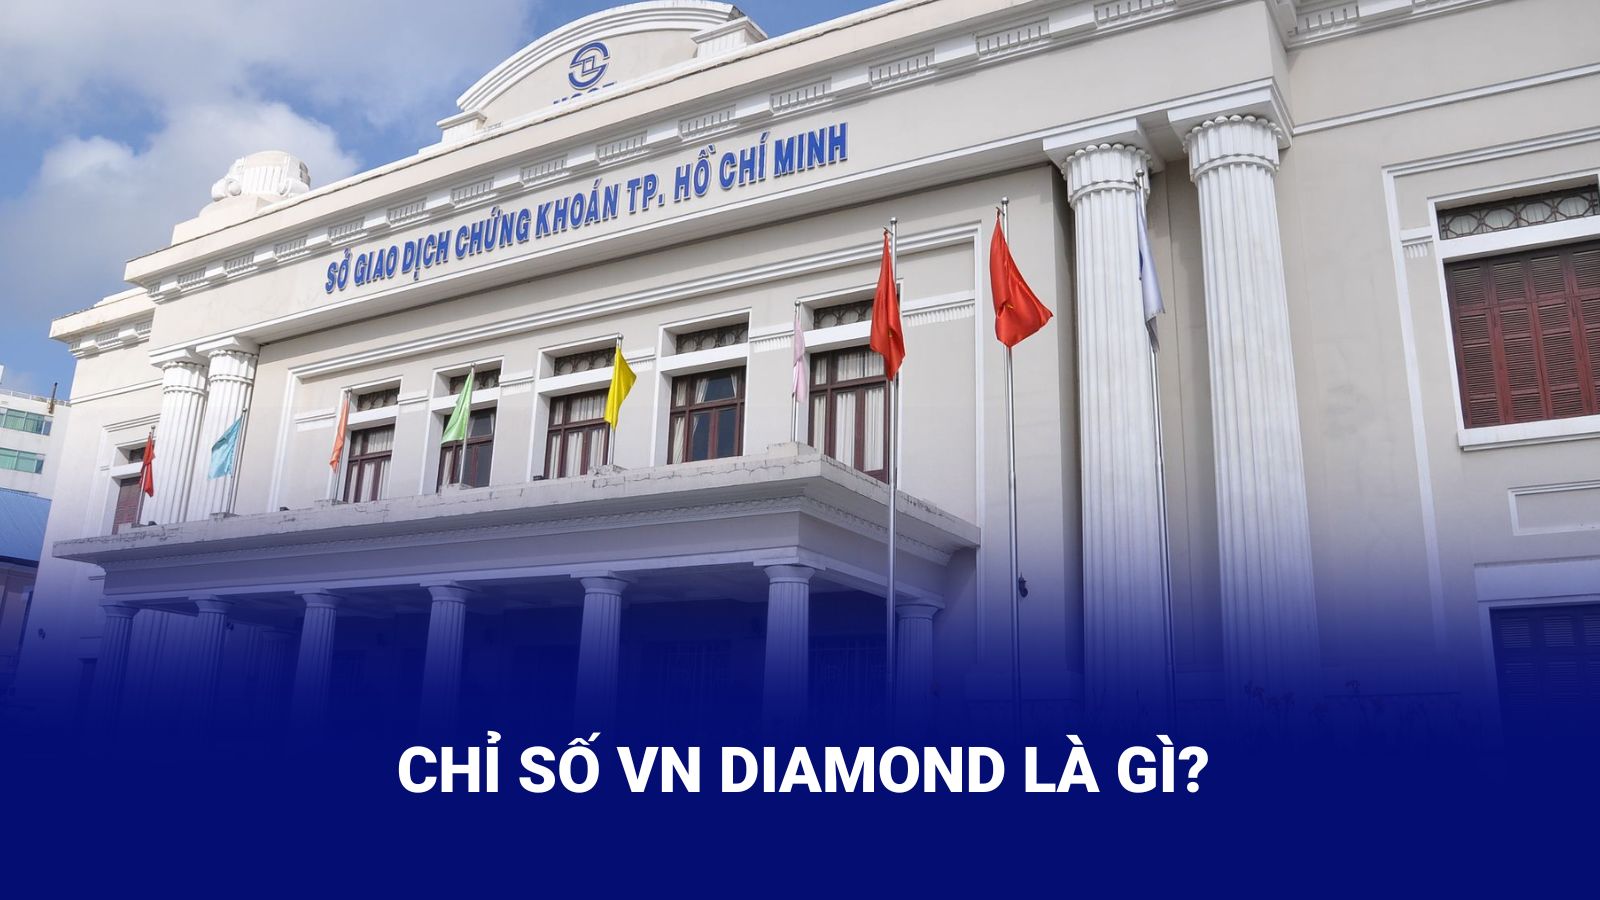 VN Diamond được xây dựng và quản lý bởi Sở Giao dịch chứng khoán Tp.HCM